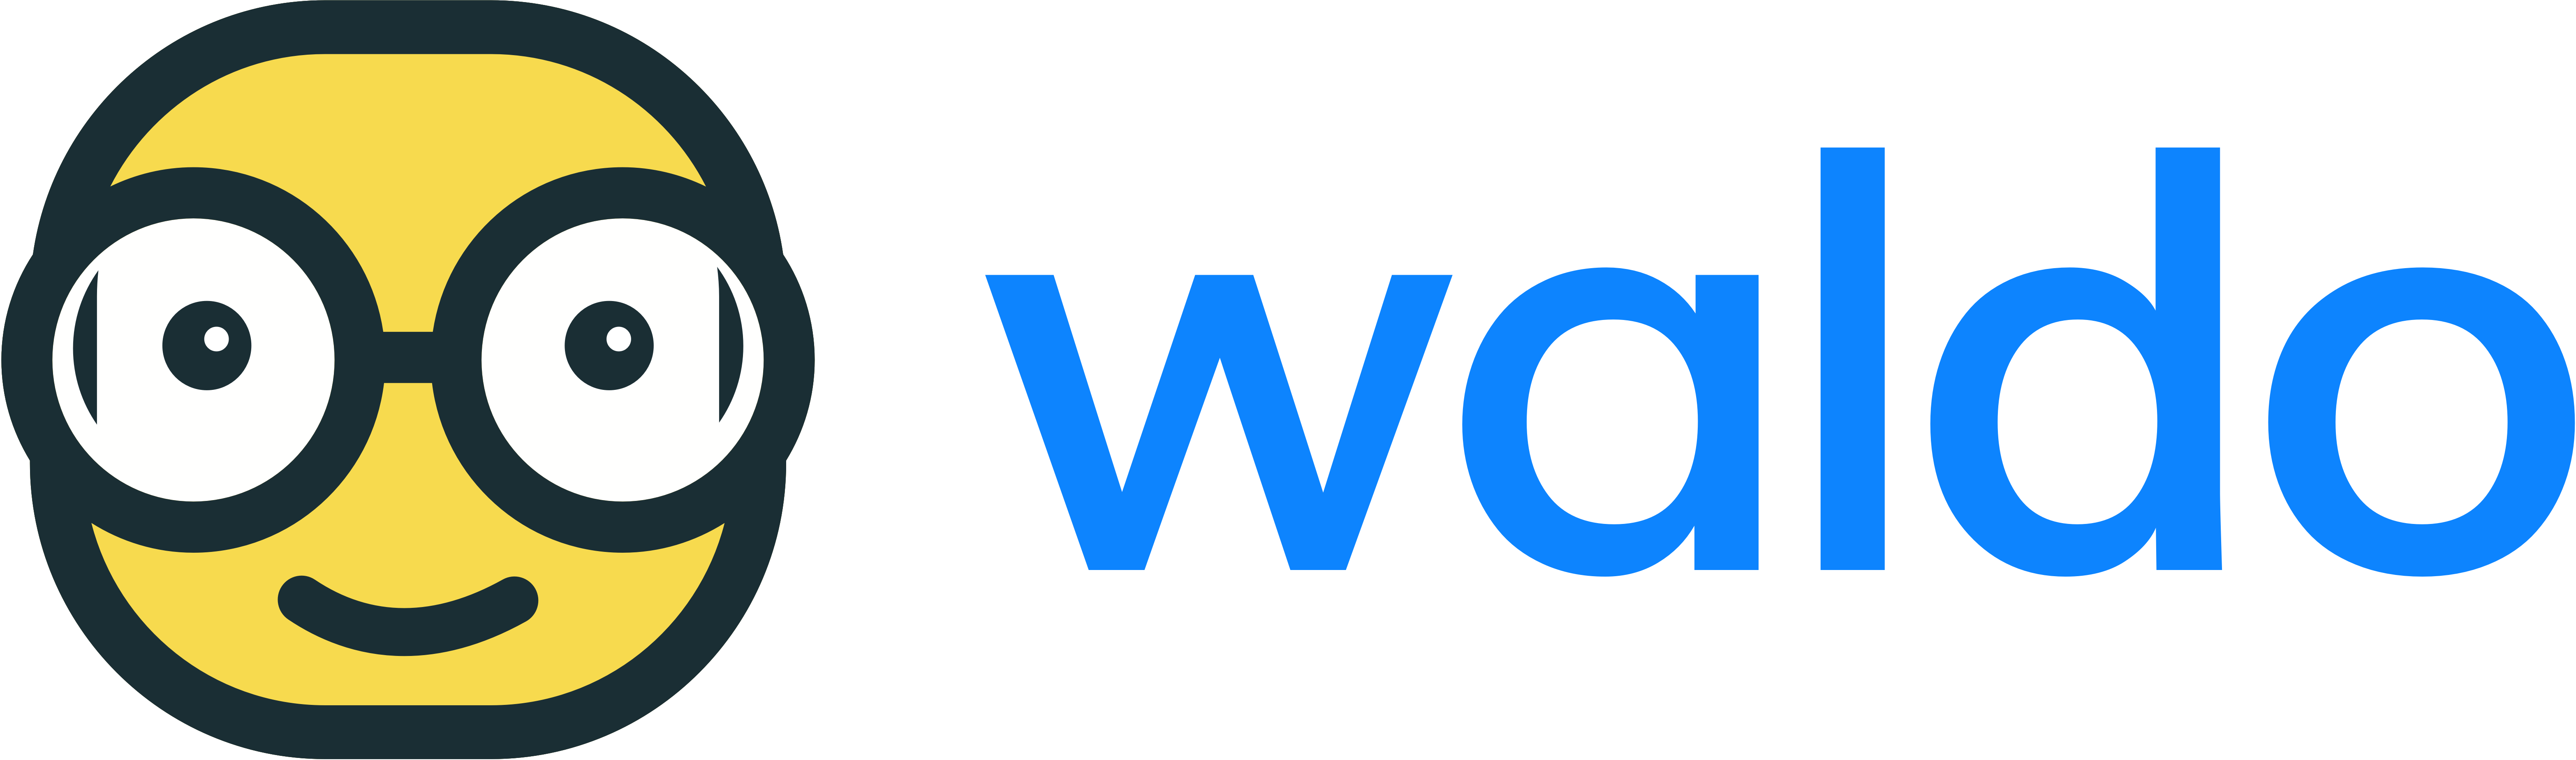 Waldo logo with text